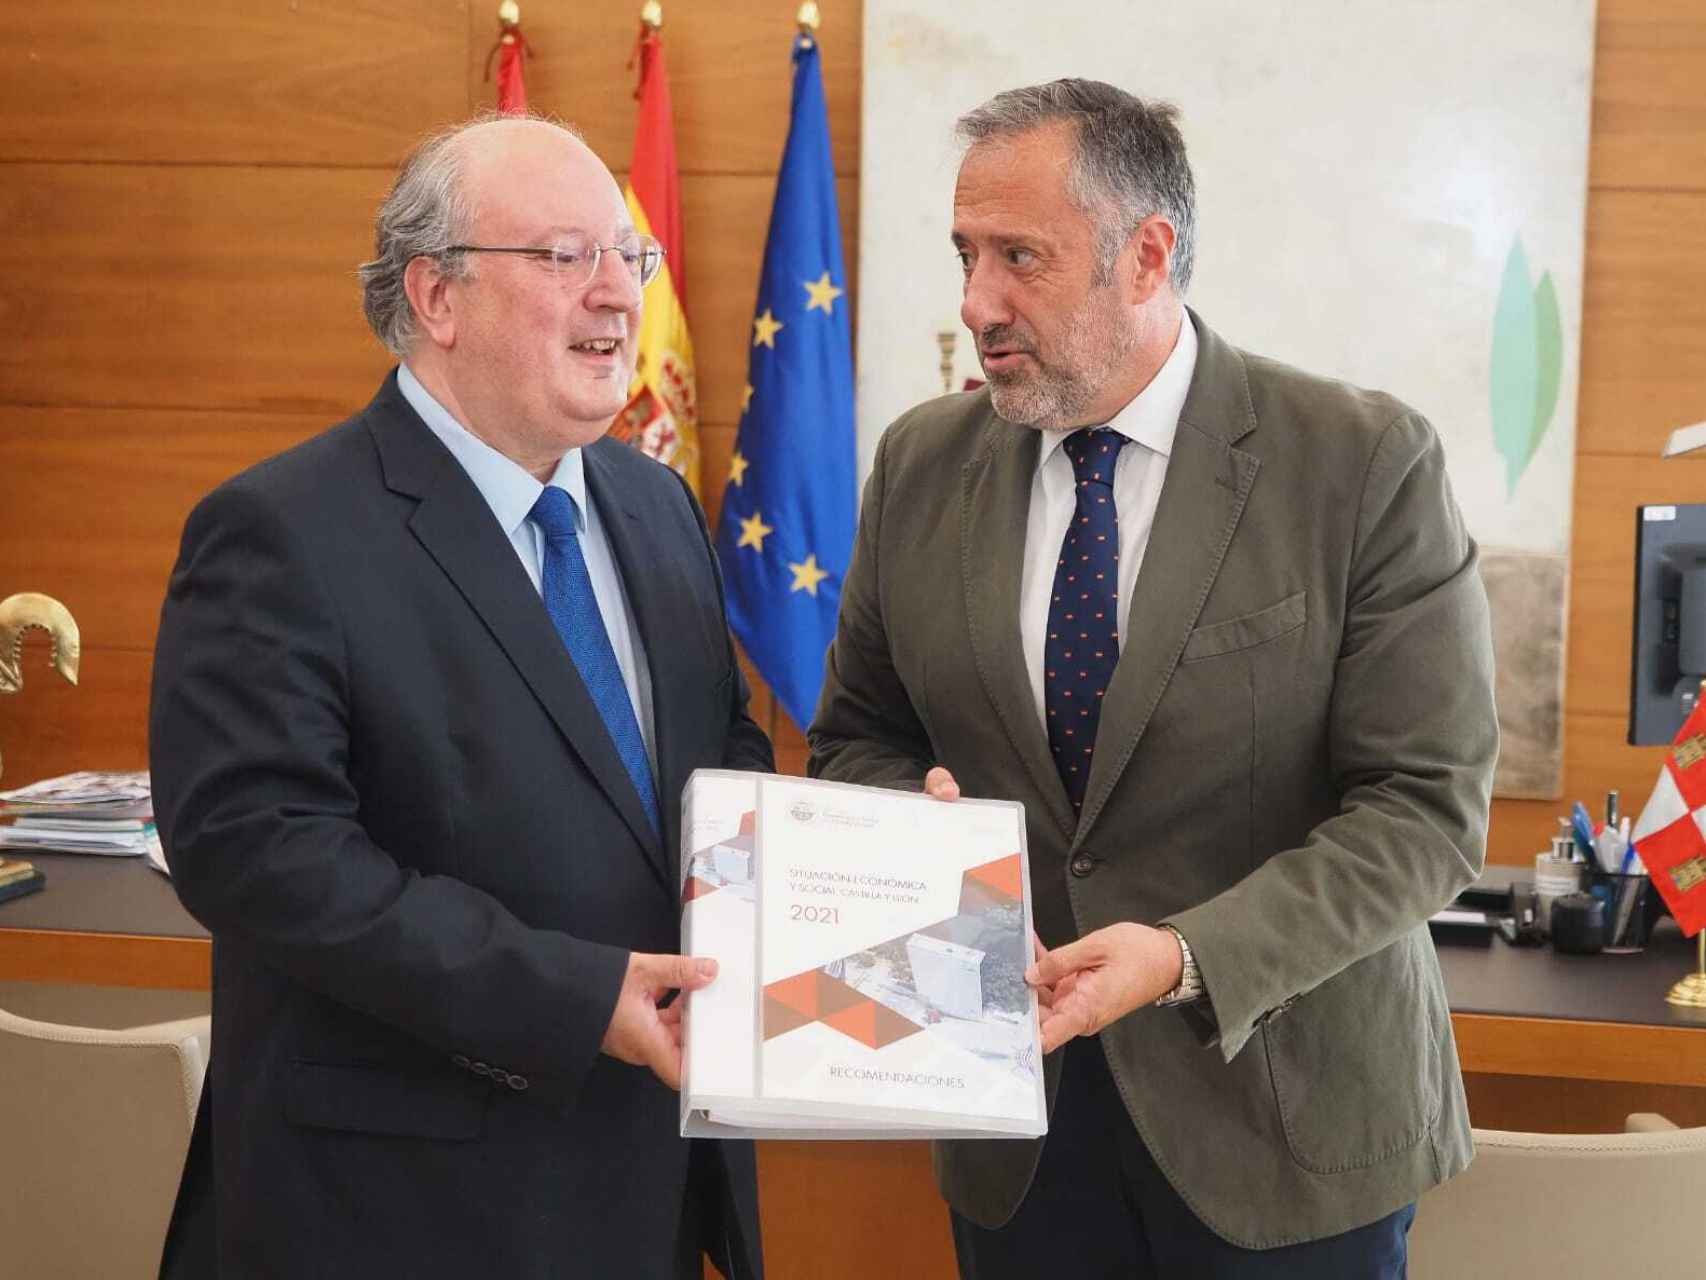 El presidente del CES, Enrique Cabero, entrega al presidente de las Cortes, Carlos Pollán, el Informe sobre la situación económica y social de Castilla y León, este jueves.